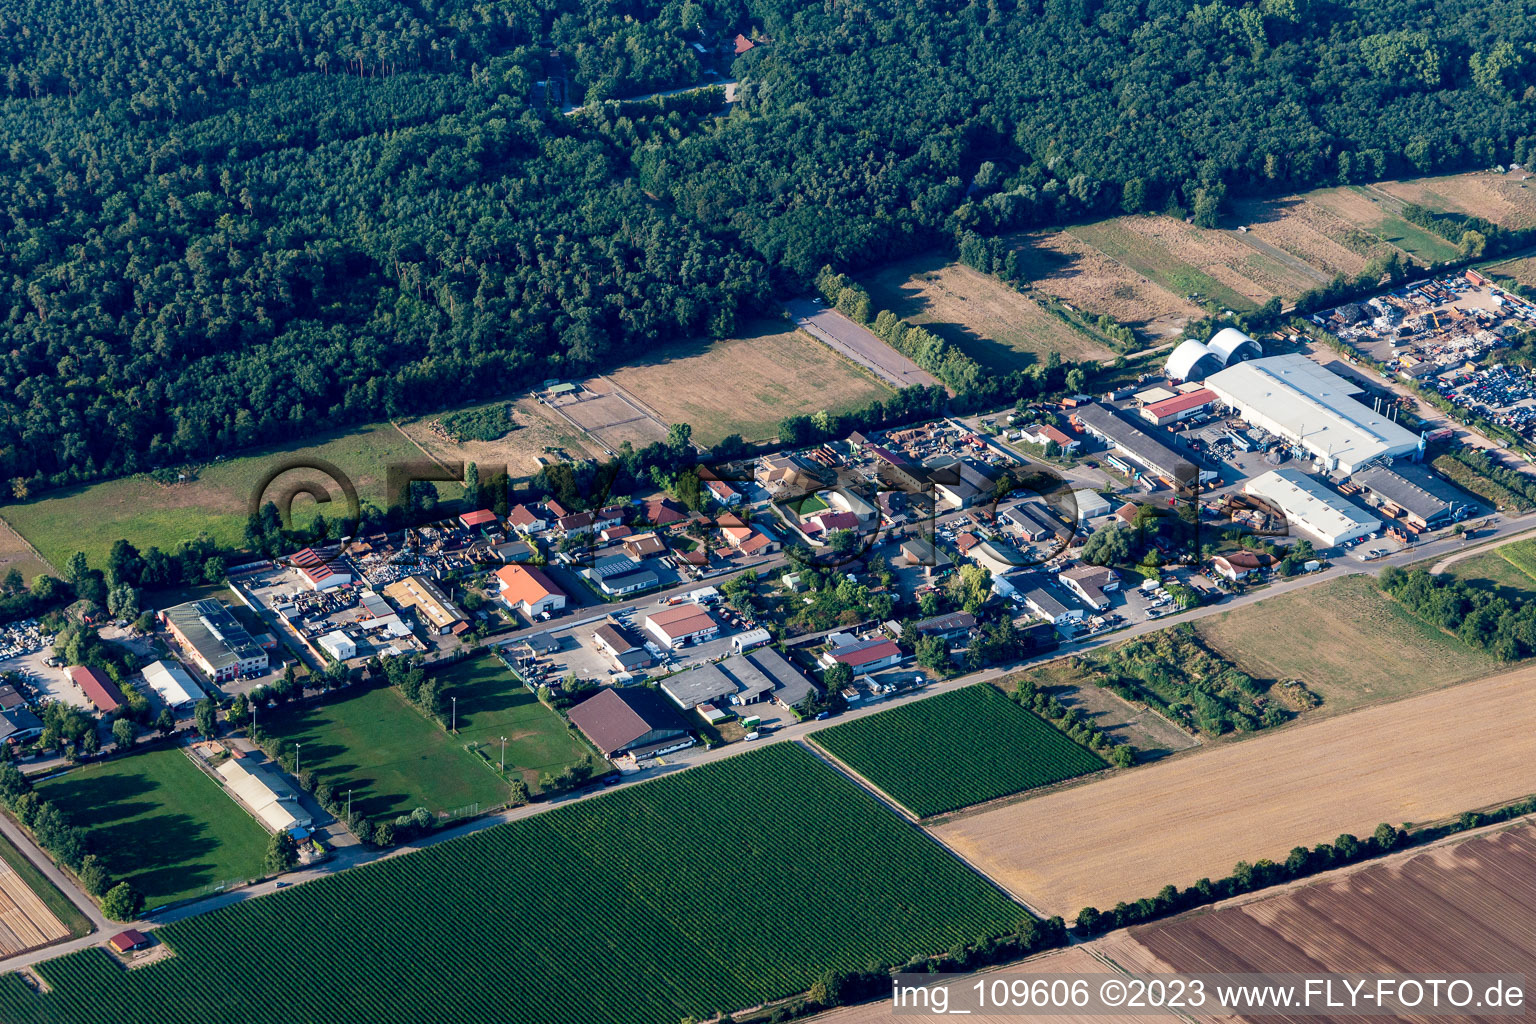 Vue aérienne de Niederlustadt dans le département Rhénanie-Palatinat, Allemagne